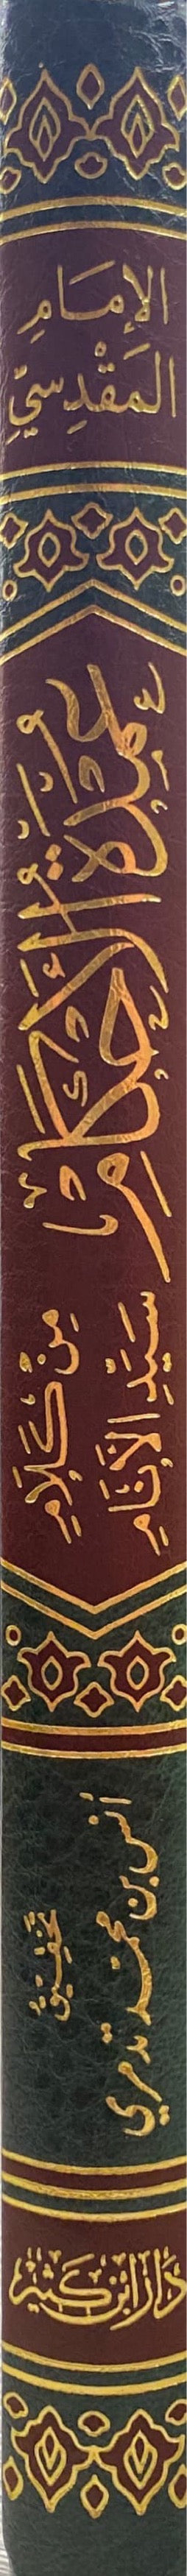 عمدة الاحكام    Umdatul Ahkam (Ibn Kathir)